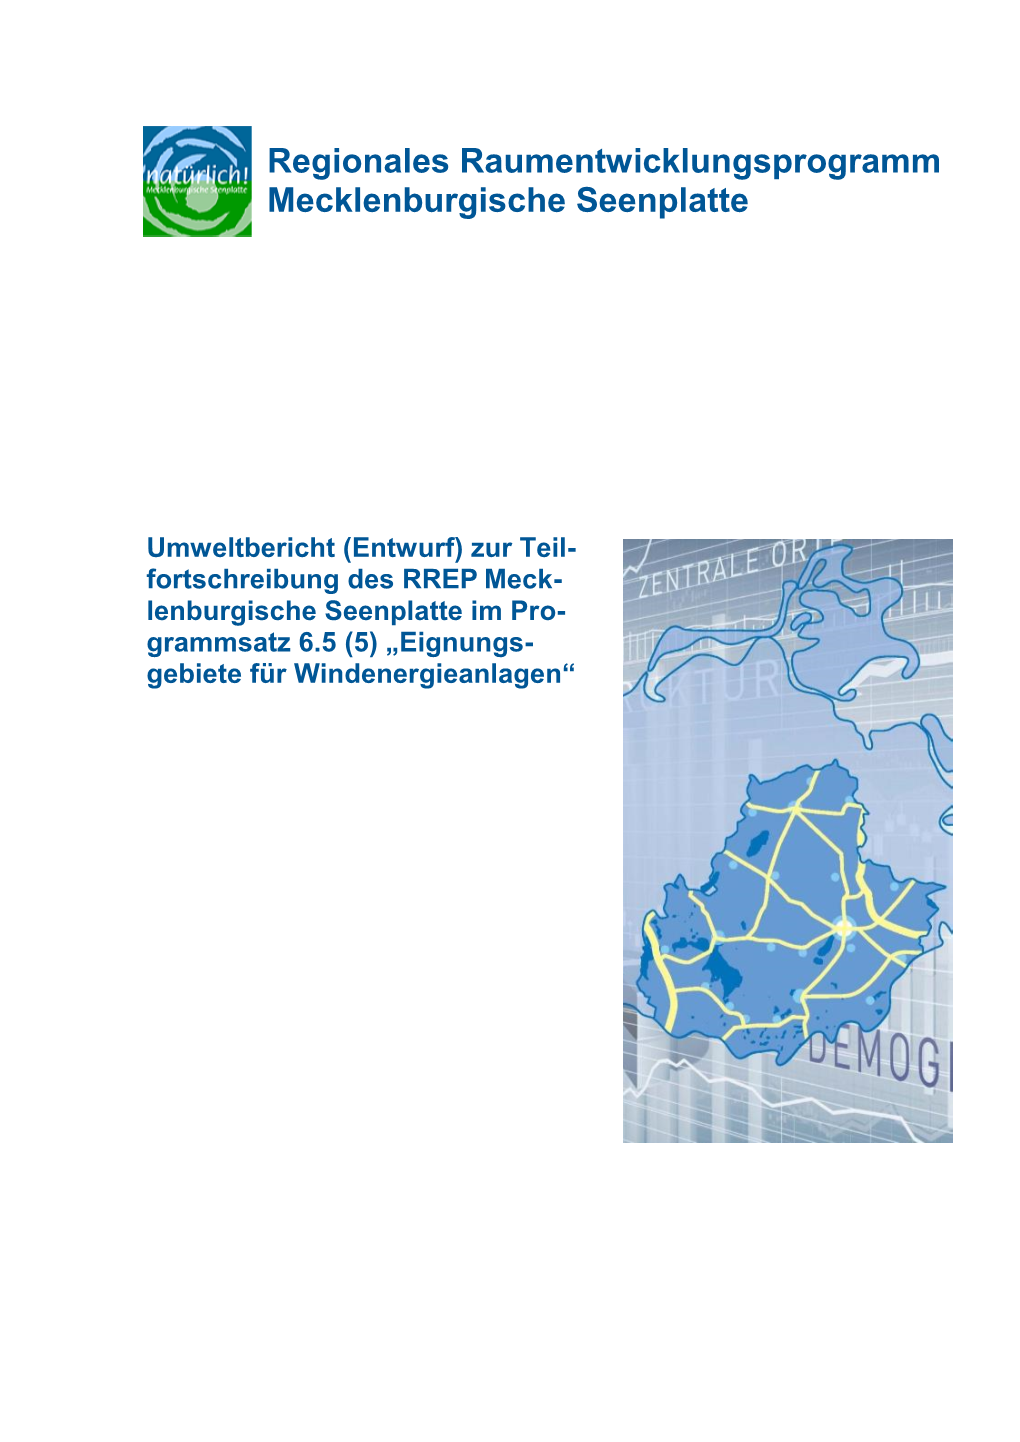 Regionales Raumentwicklungsprogramm Mecklenburgische Seenplatte